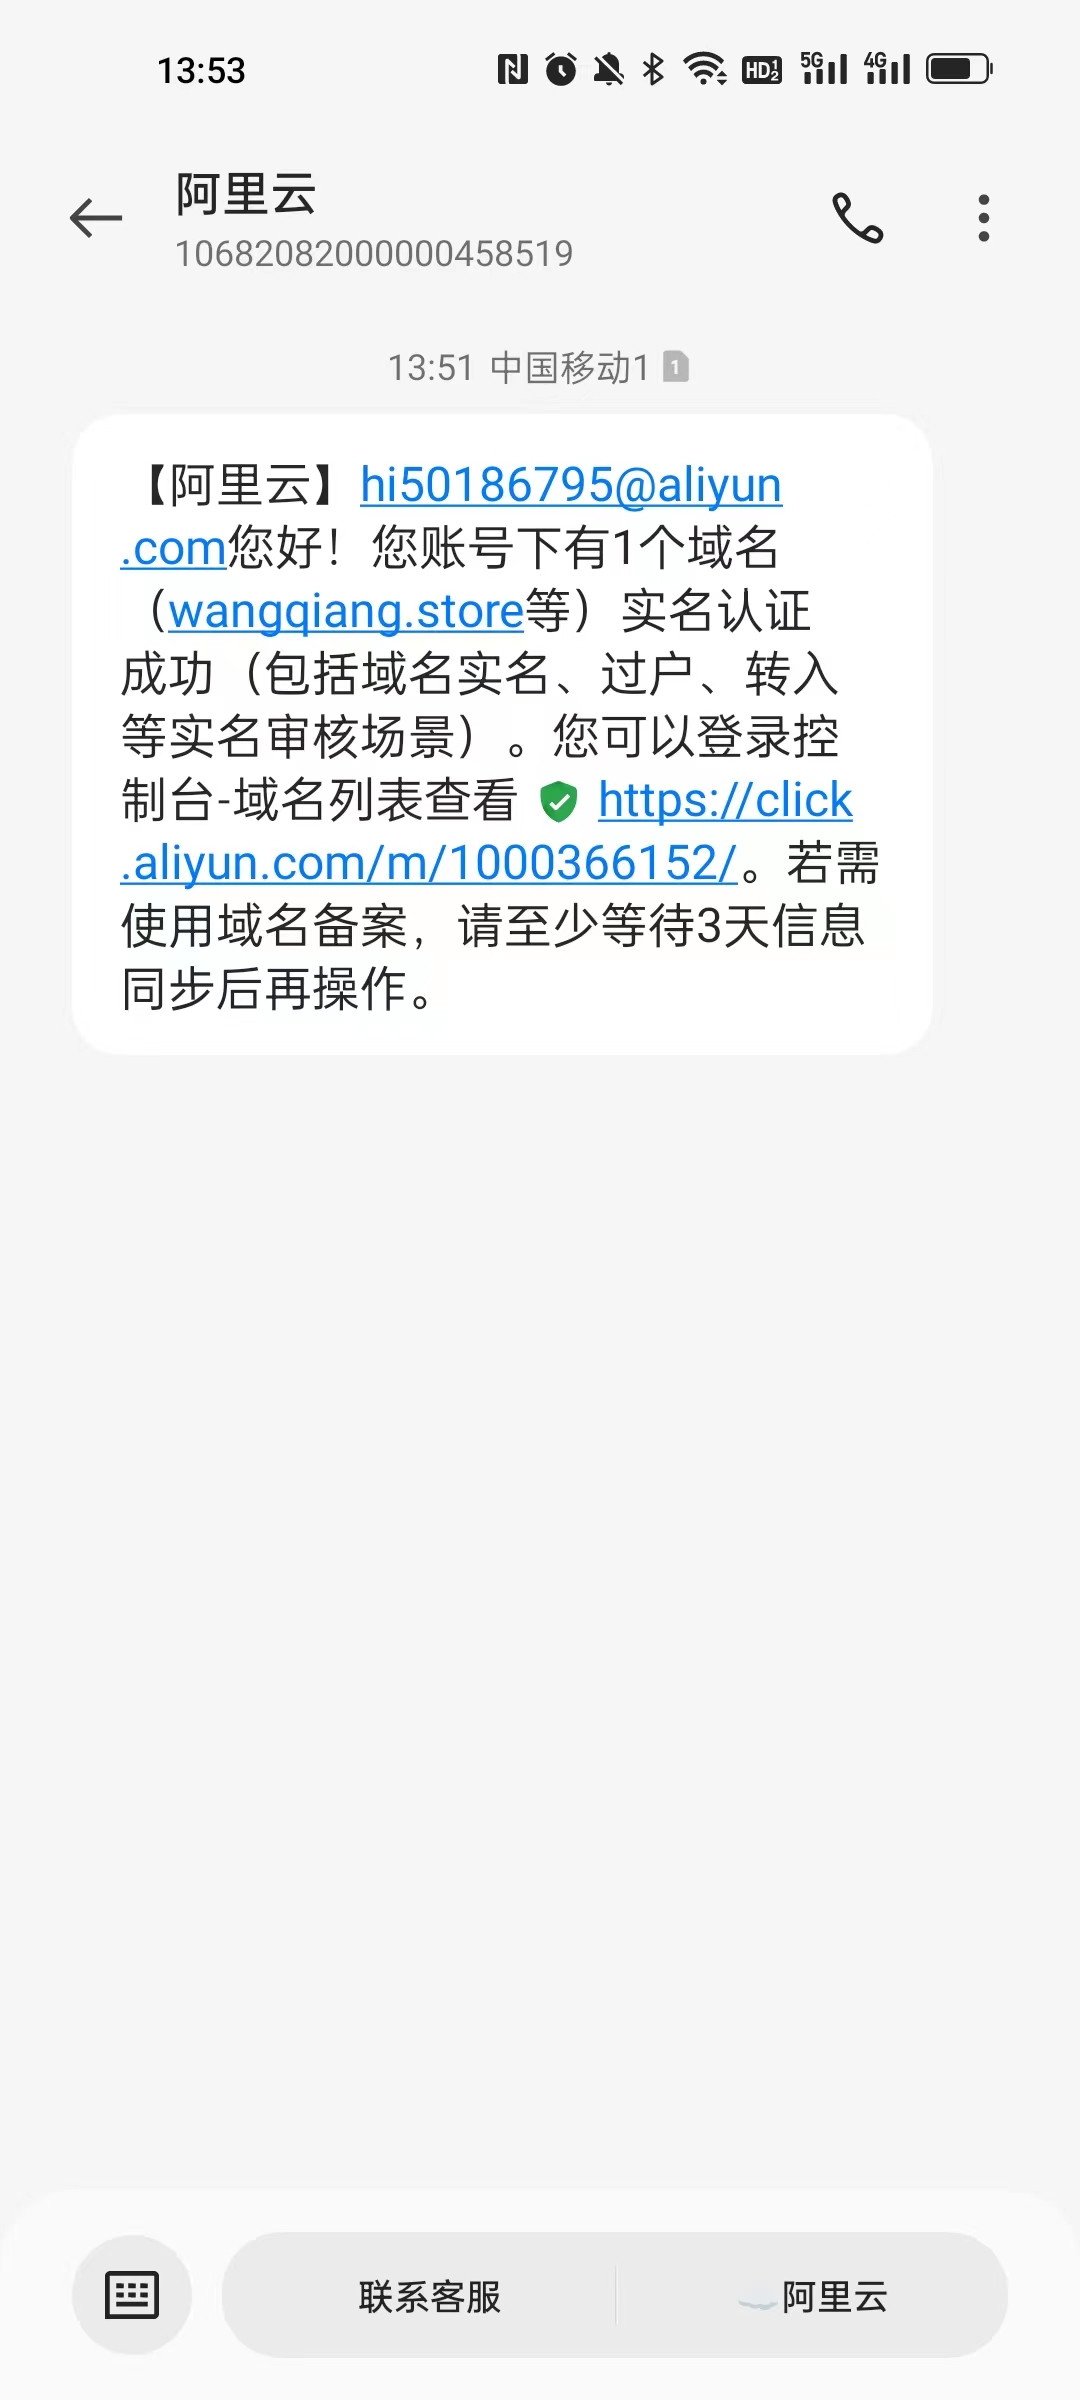 可能是因为域名是刚才注册的。收到短信内容如下：【阿里云】hi50186795@aliyun.com您好！您账号下有1个域名（wangqiang.store等）实名认证成功（包括域名实名、过户、转入等实名审核场景）。您可以登录控制台-域名列表查看 https://click.aliyun.com/m/1000366152/。若需使用域名备案，请至少等待3天信息同步后再操作